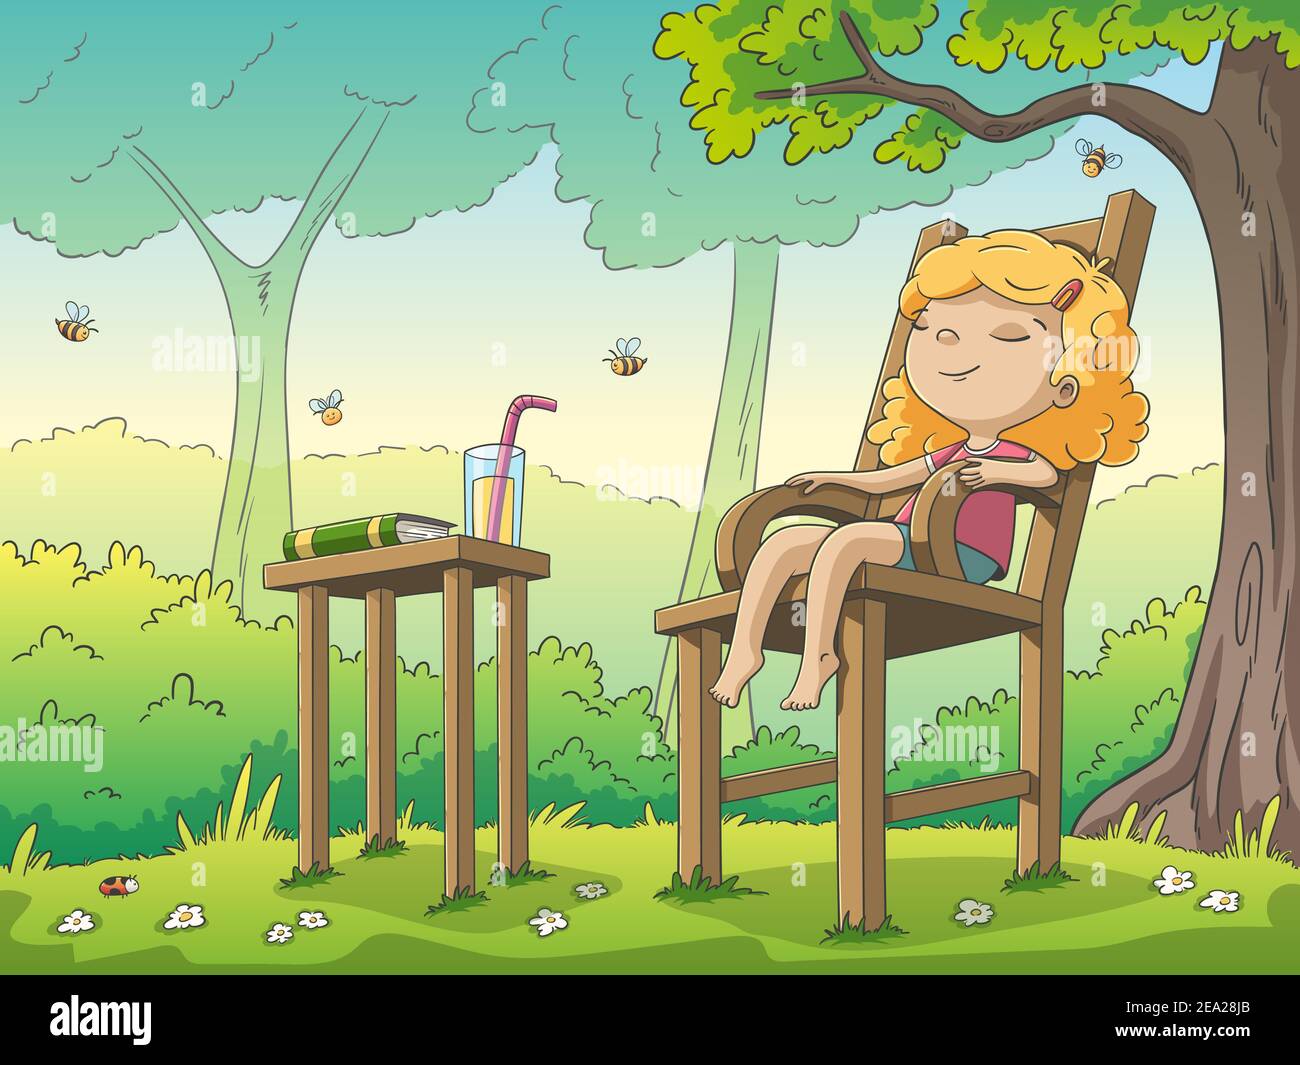 Mädchen entspannt im Garten. Handgezeichnete Vektorgrafik mit separaten Ebenen. Stock Vektor